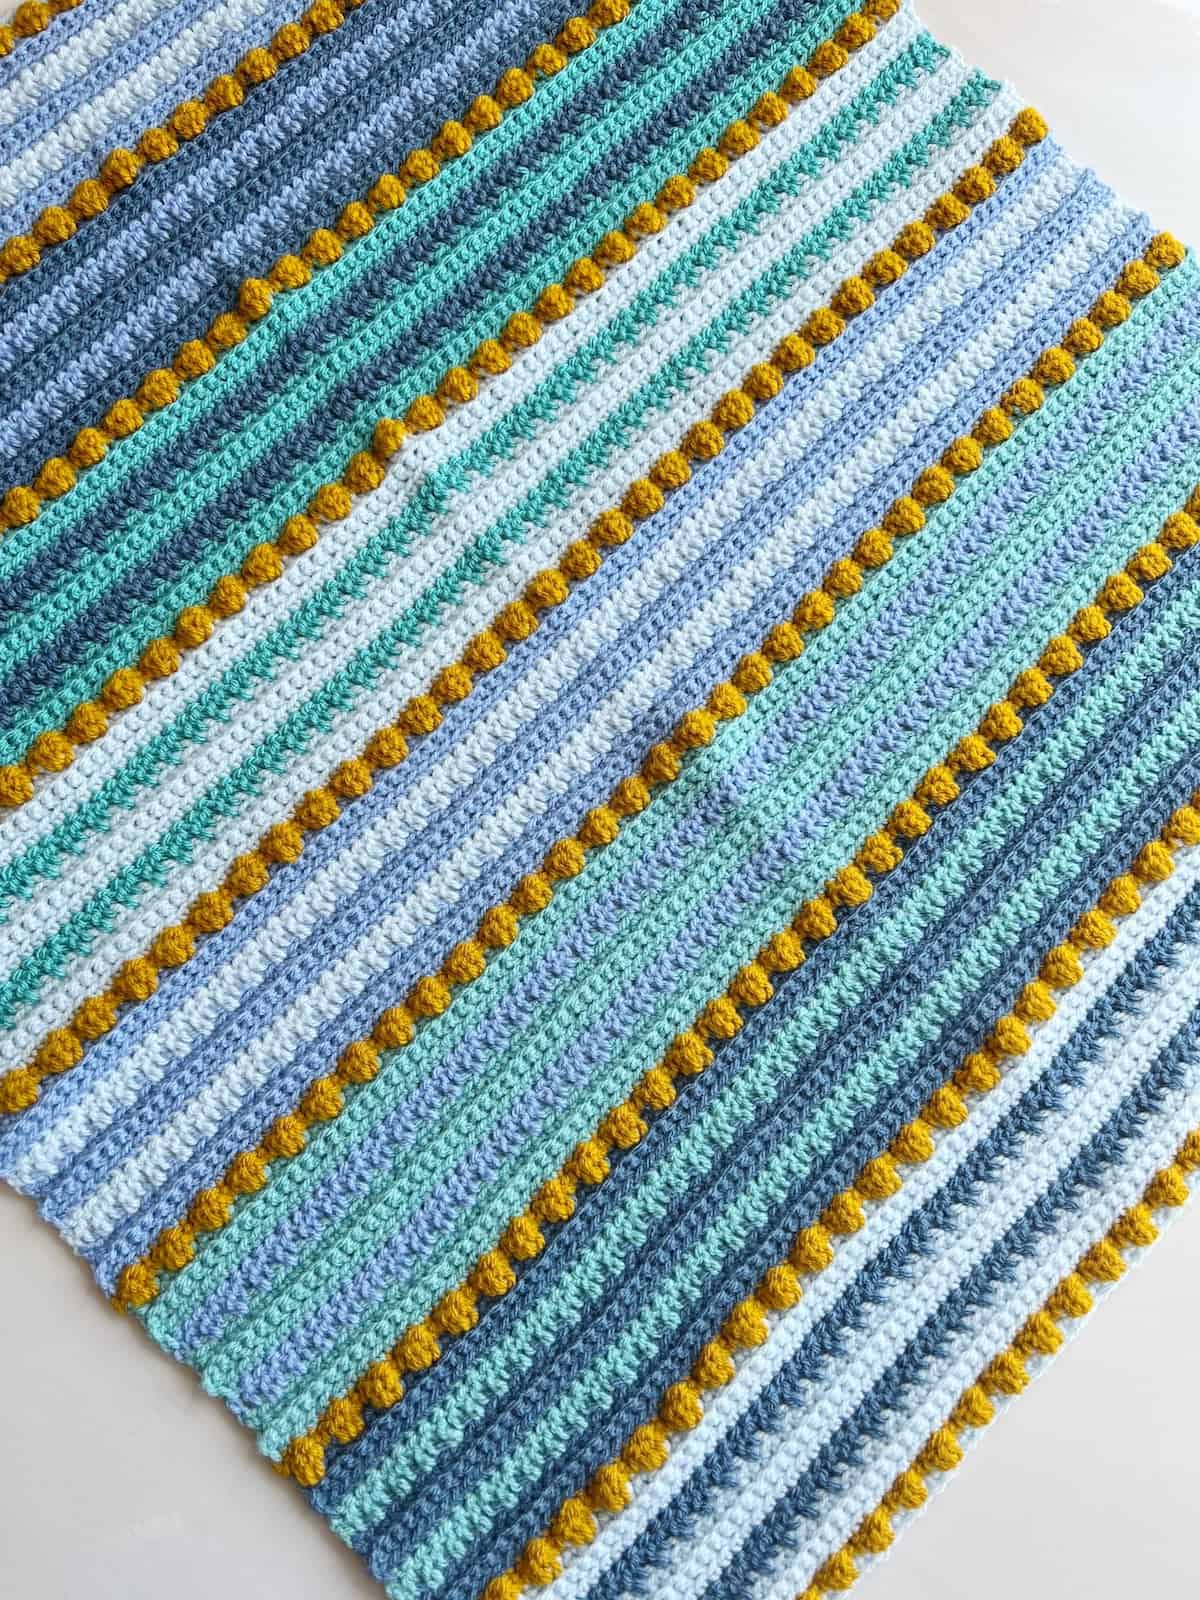 Bobble stitch crochet blanket in bright colours.